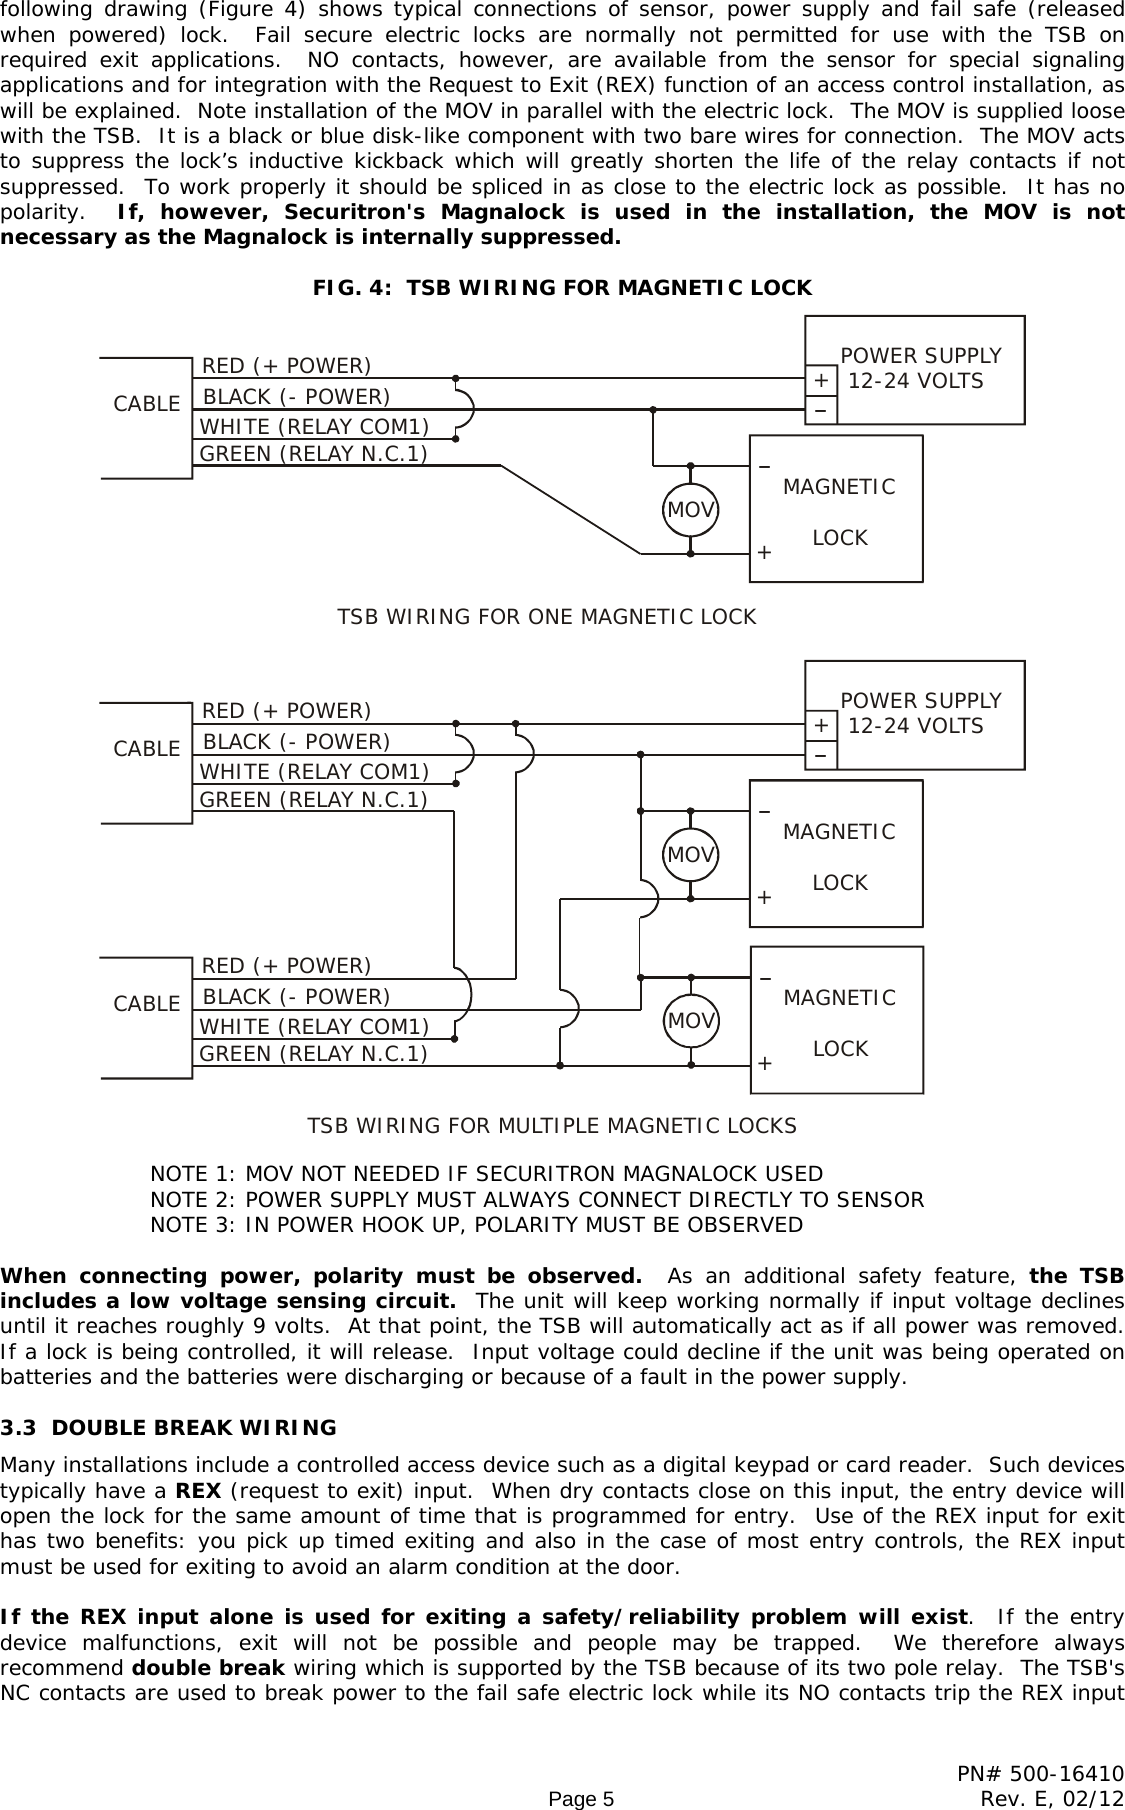 Page 5 of 10 - Securitron - TSB SERIES TS5 Pcb 500-16410_E Installation And Operation Instructions 20SERIES 20 20TS5 20pcb 20500-16410 E